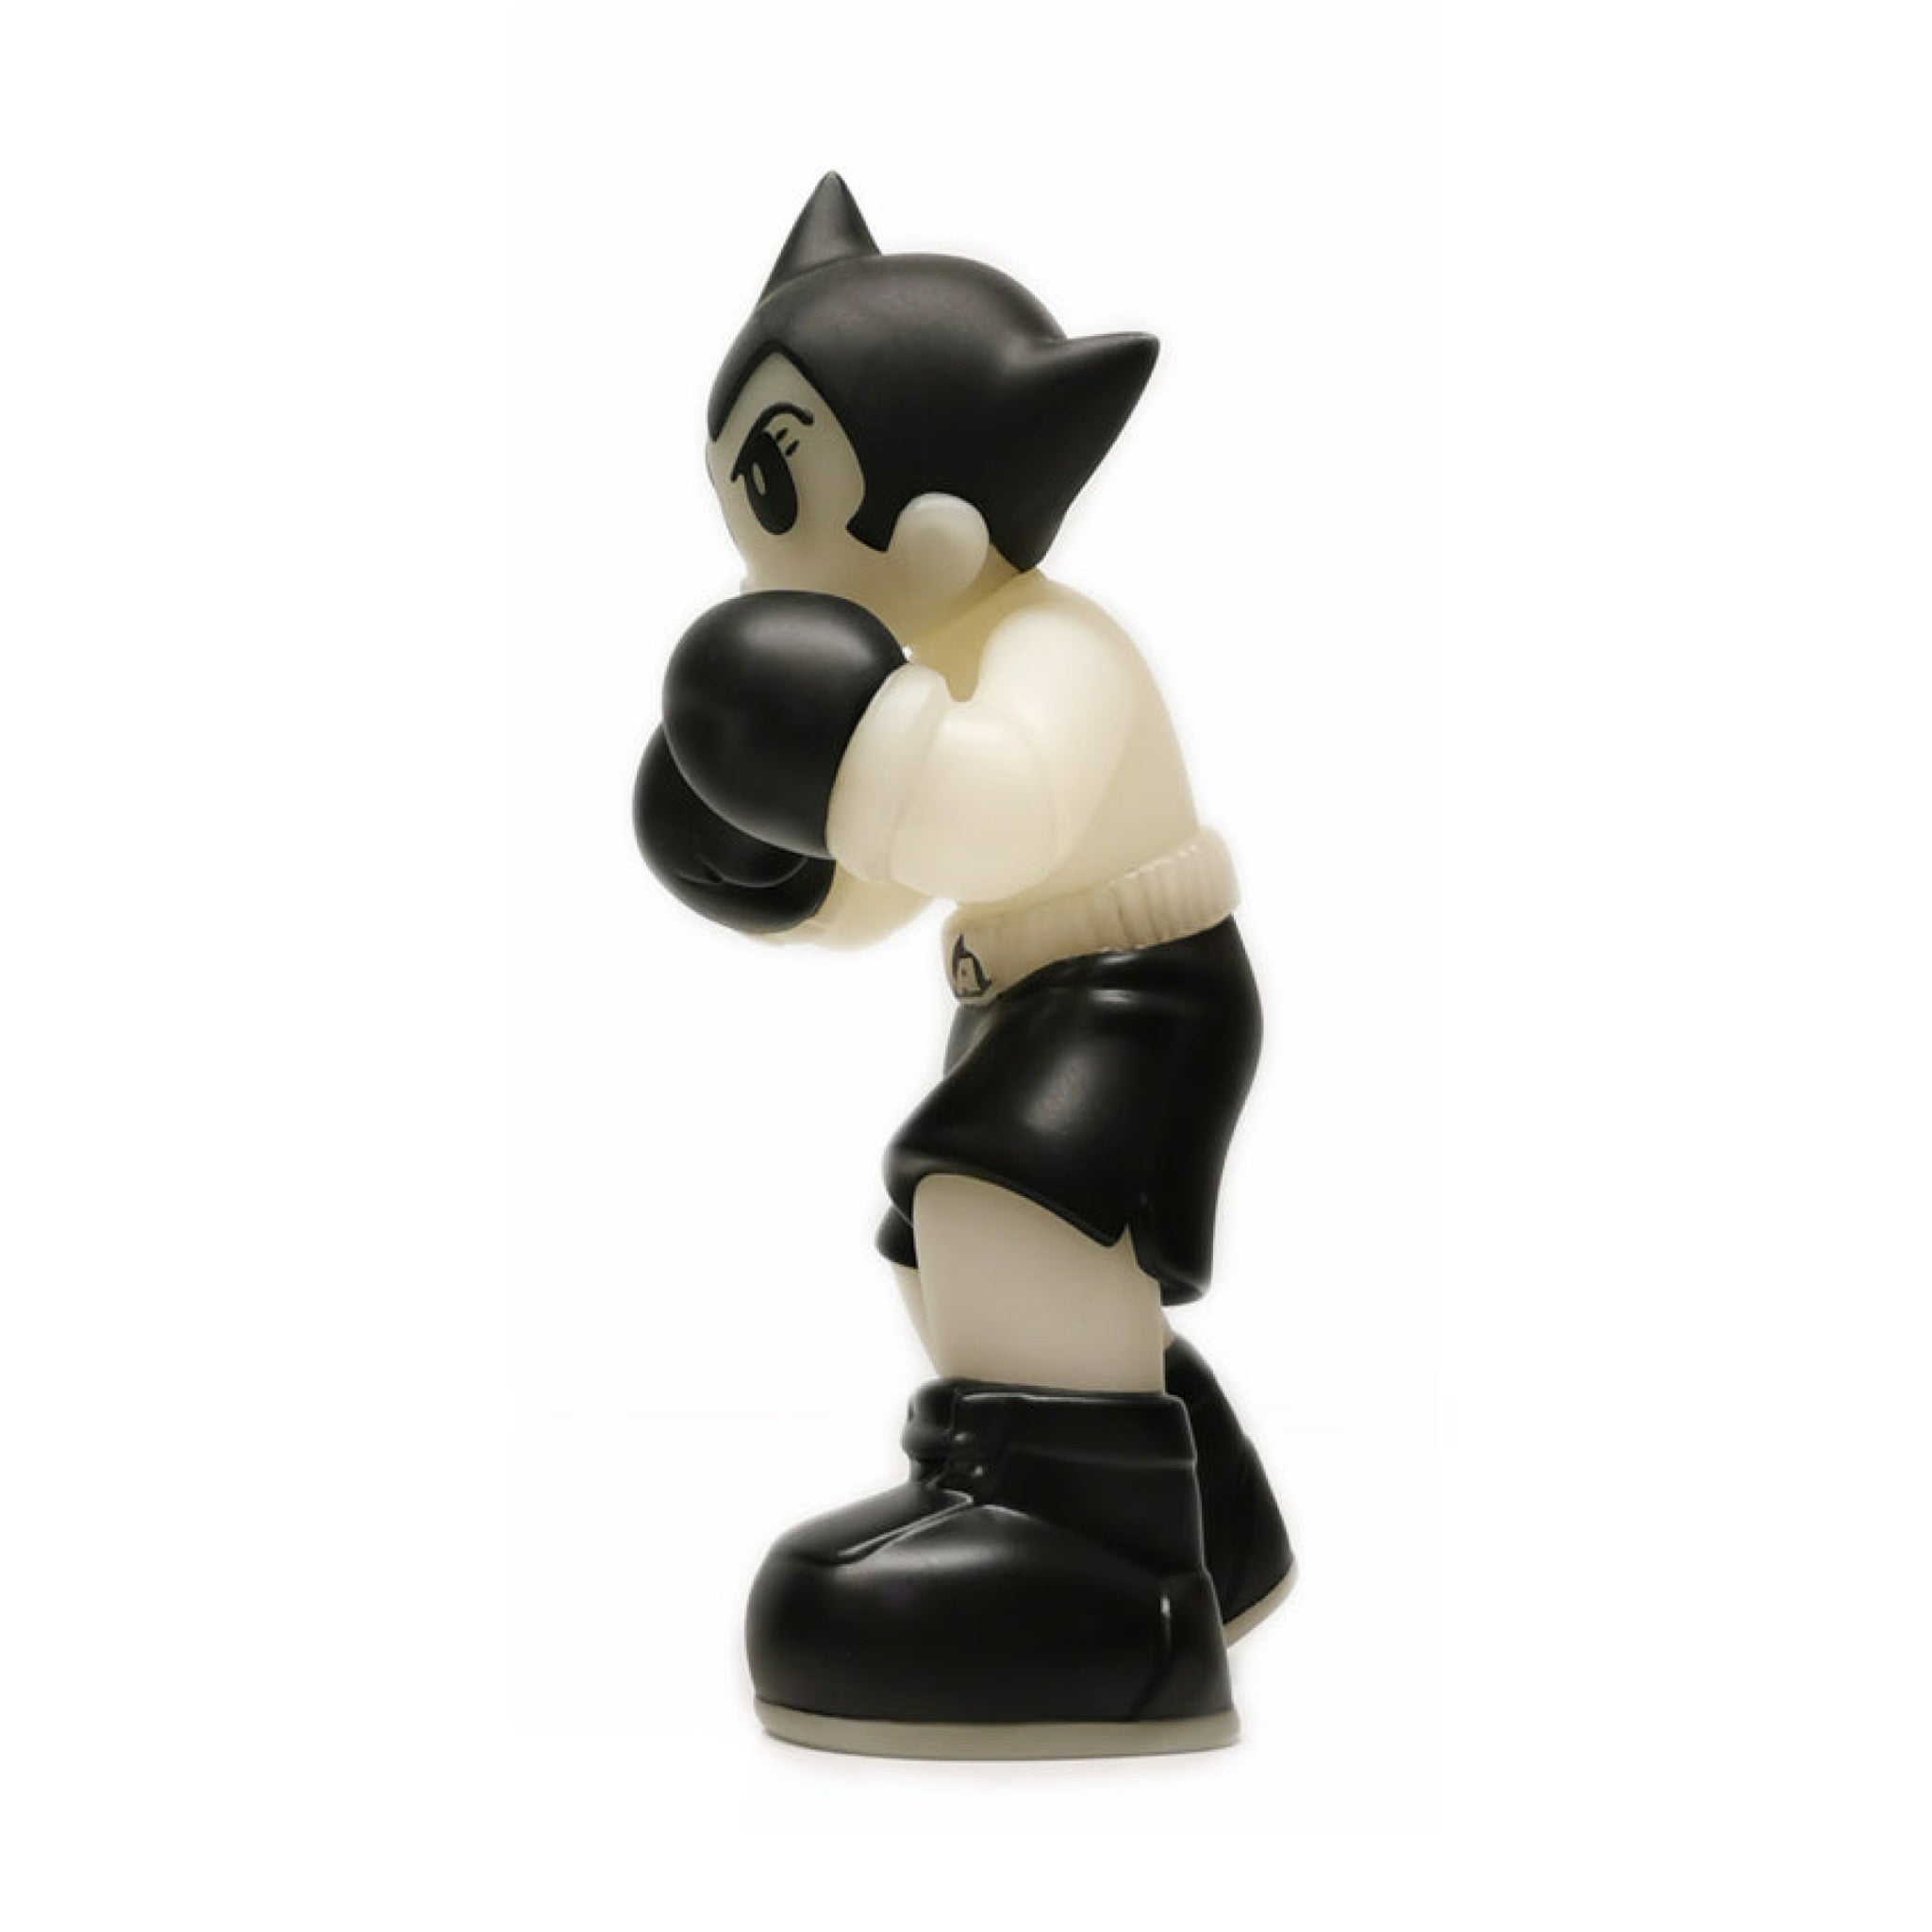 Astro Boy Boxer - GID Green 6 inch - Wynwood Walls Shop